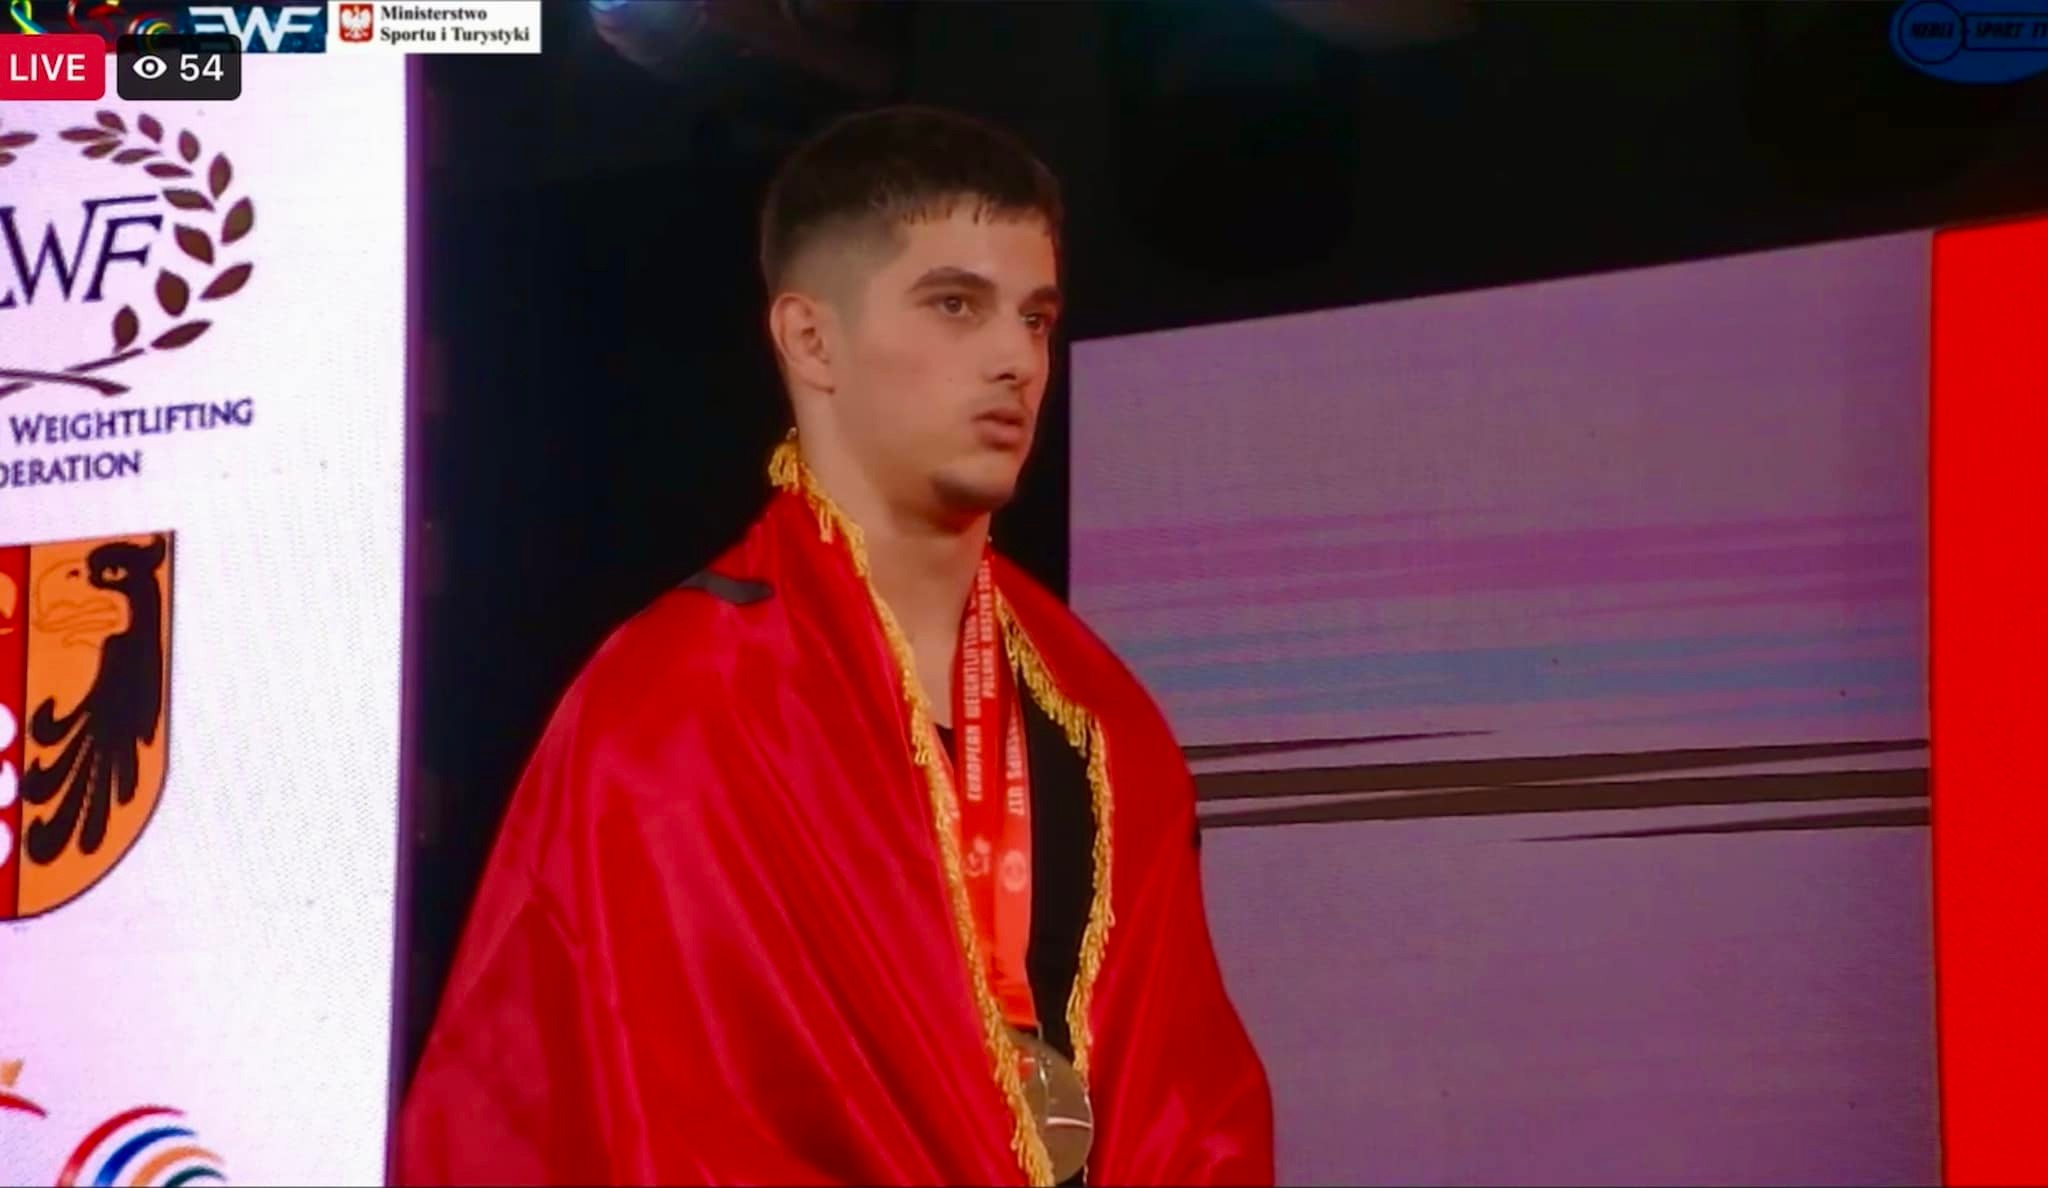 Shqipëria ka një fenomen në peshëngritje, Ertjan Kofsha siguron 3 medalja ari në Kampionatin Europian U-17 në Poloni